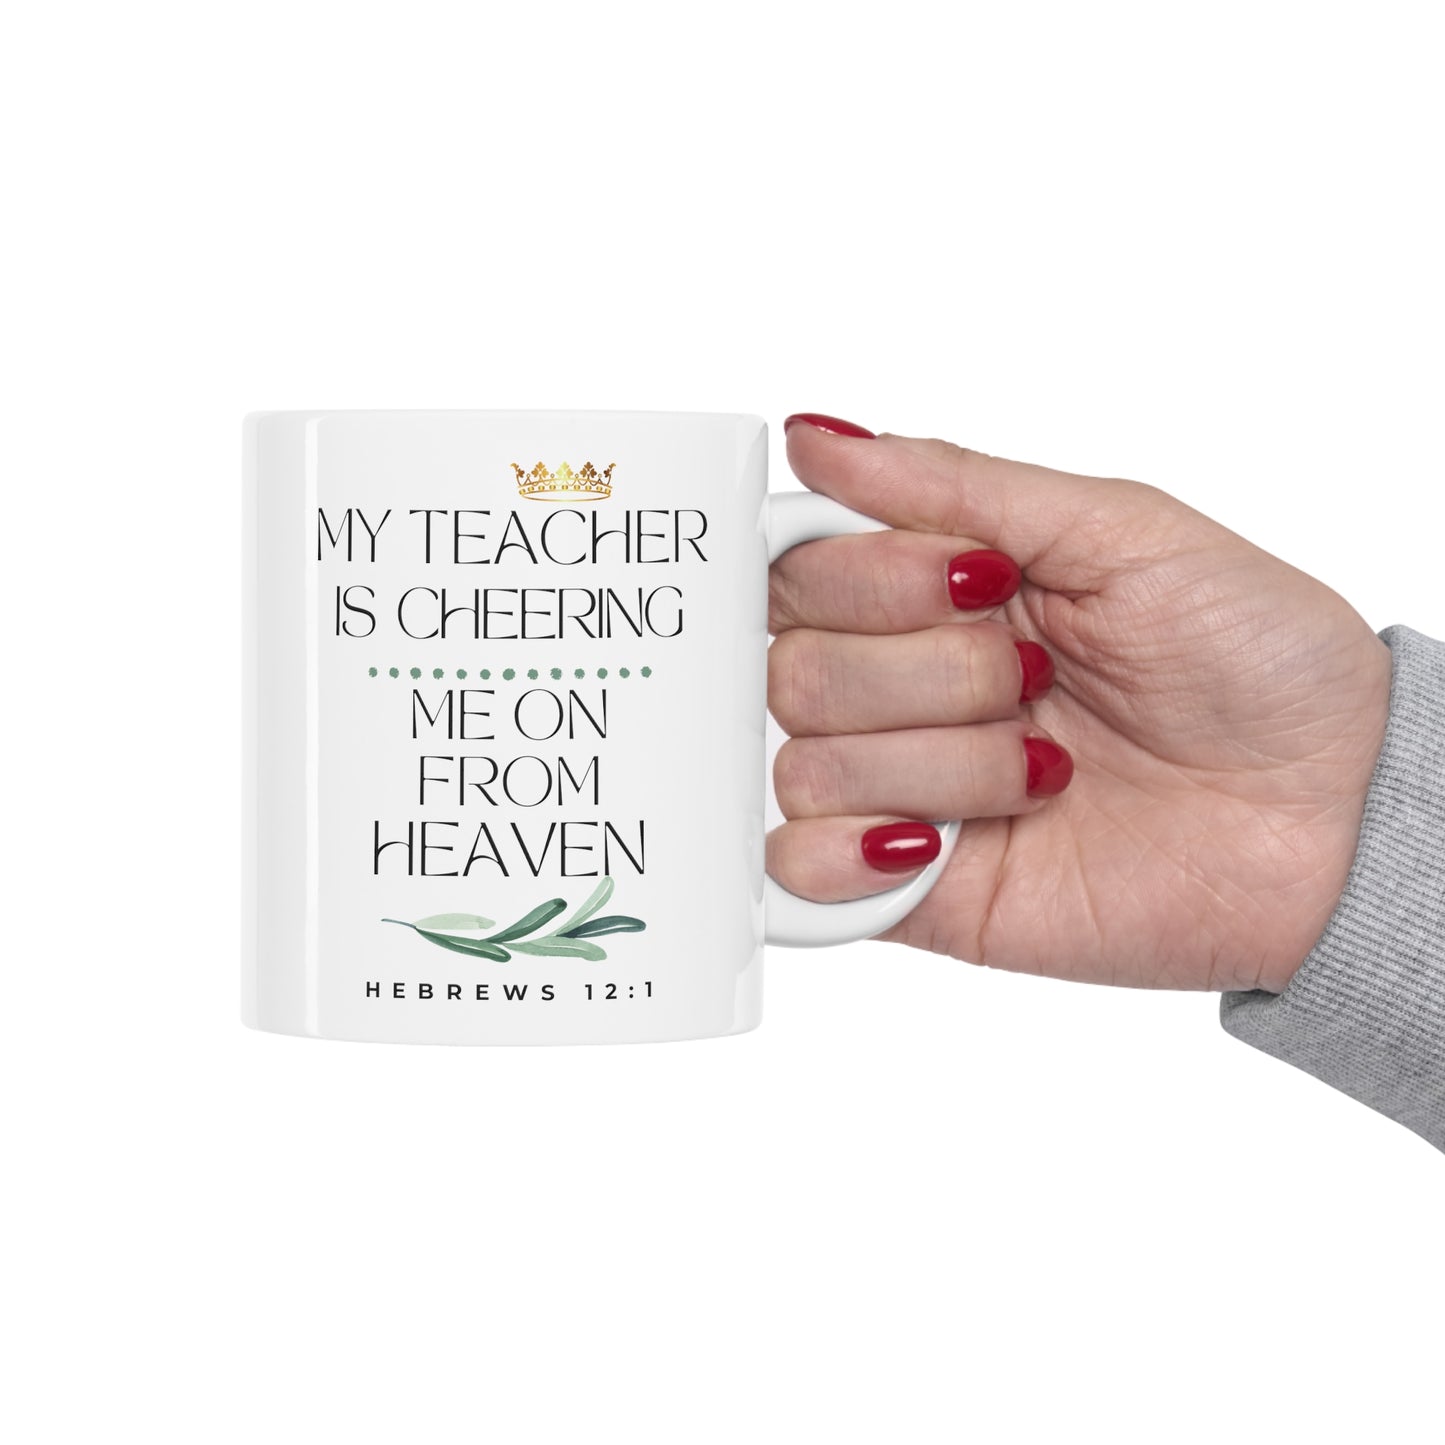 Teacher Memorial Gift Mug, Cheering Me on from Heaven